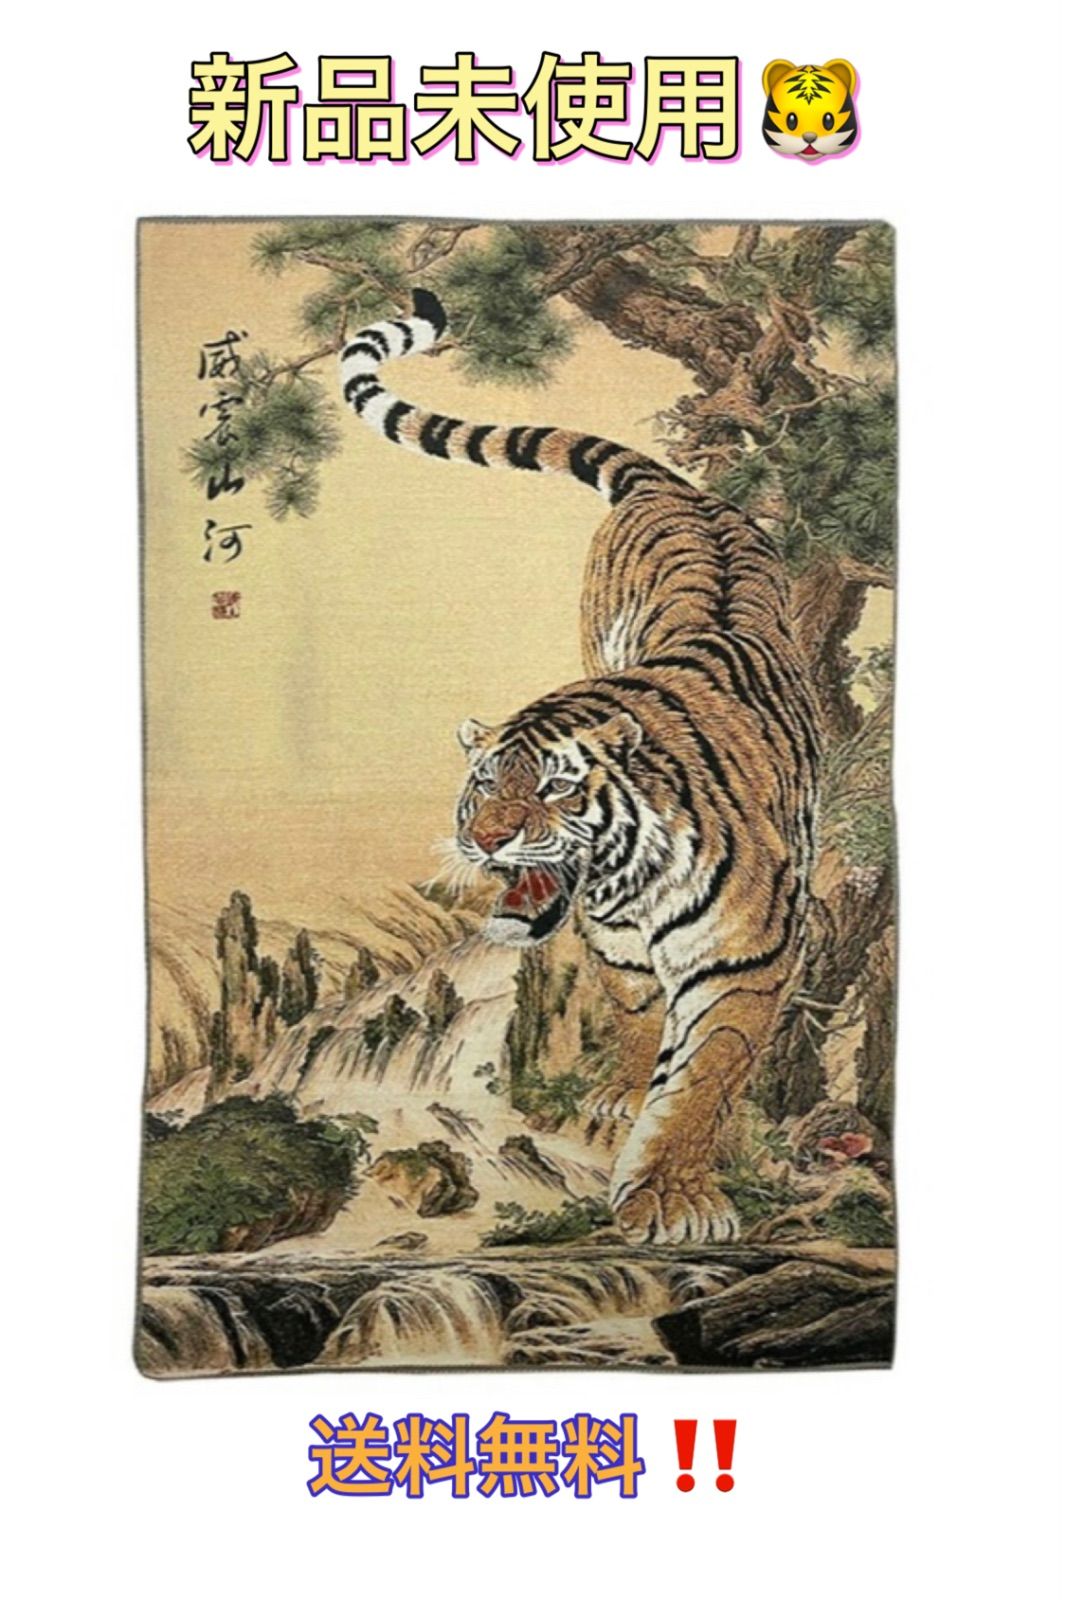 風水 虎 トラ Tiger 寅 タペストリー 刺繍 絵 玄関 絵 虎の飾り 壁 